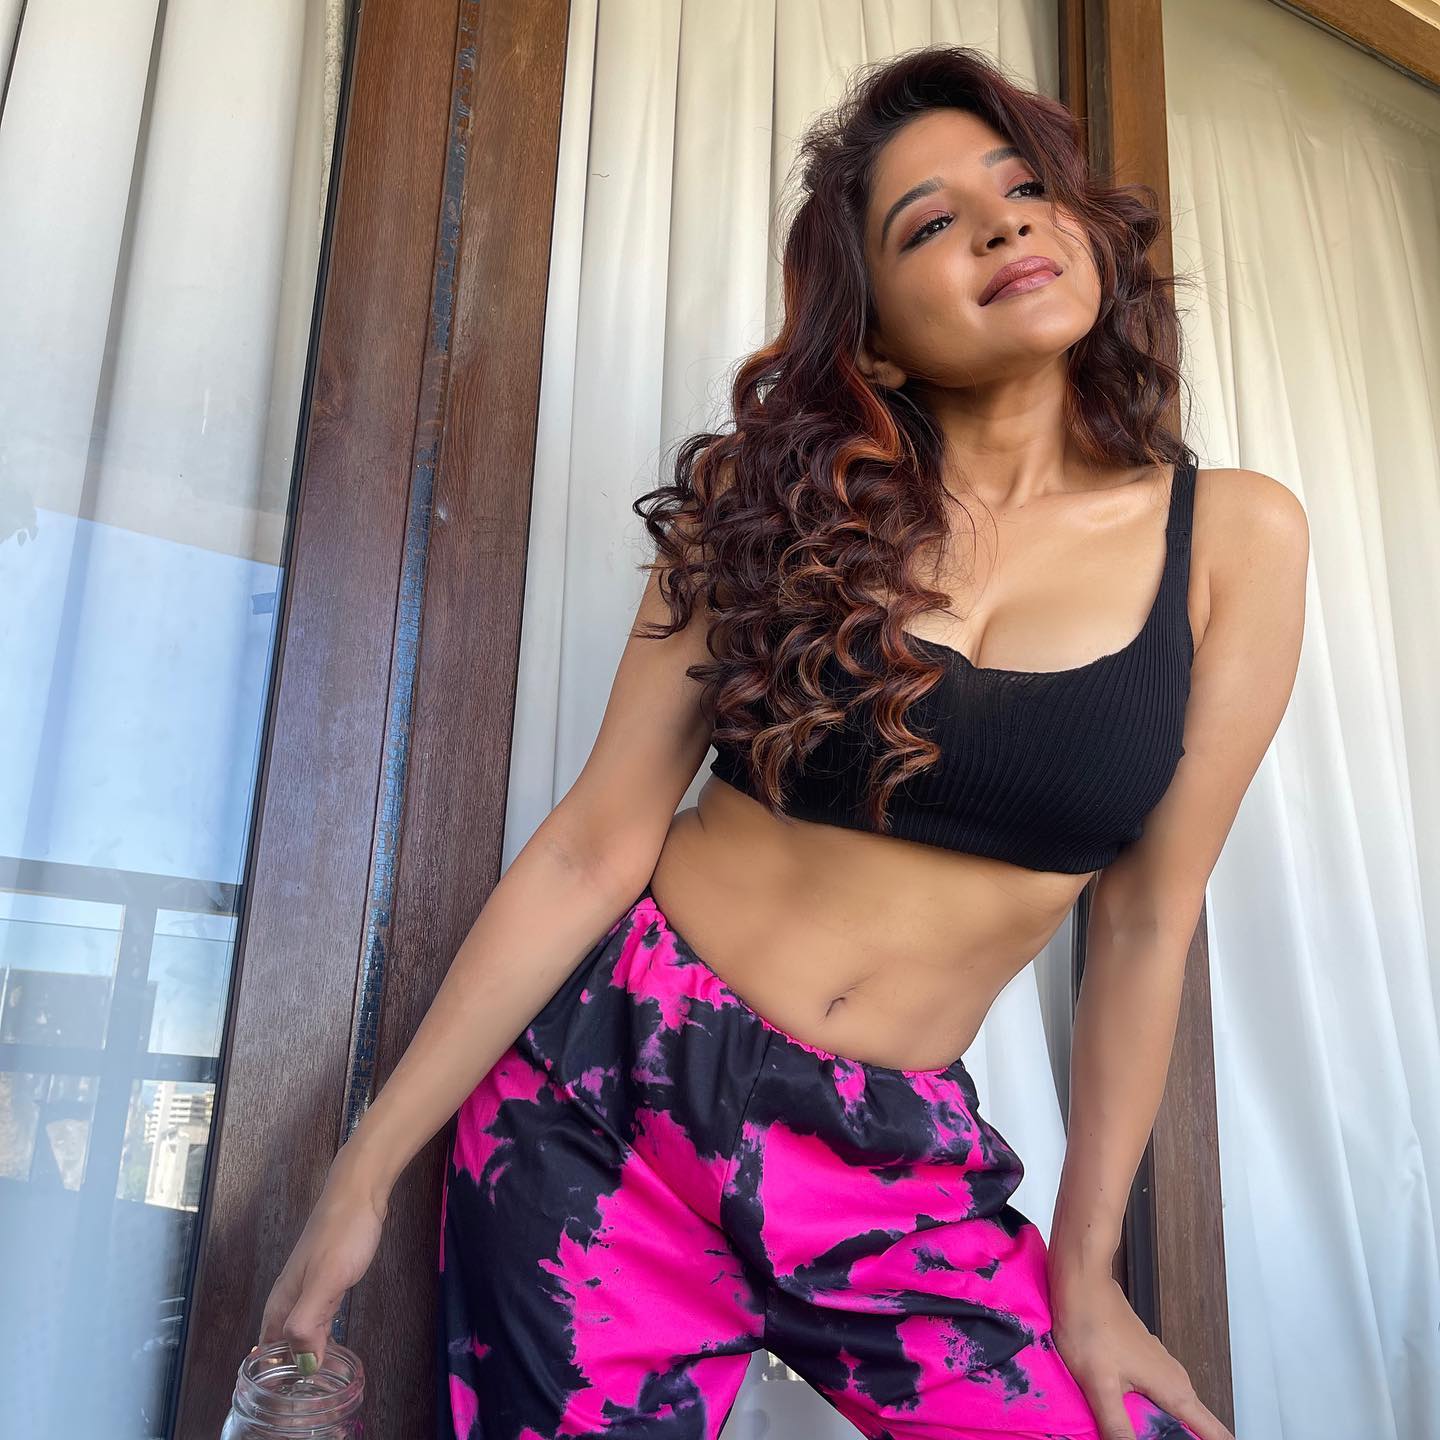 Sakshi agarwal hot posing in glamourous gym suit photoshoot getting viral